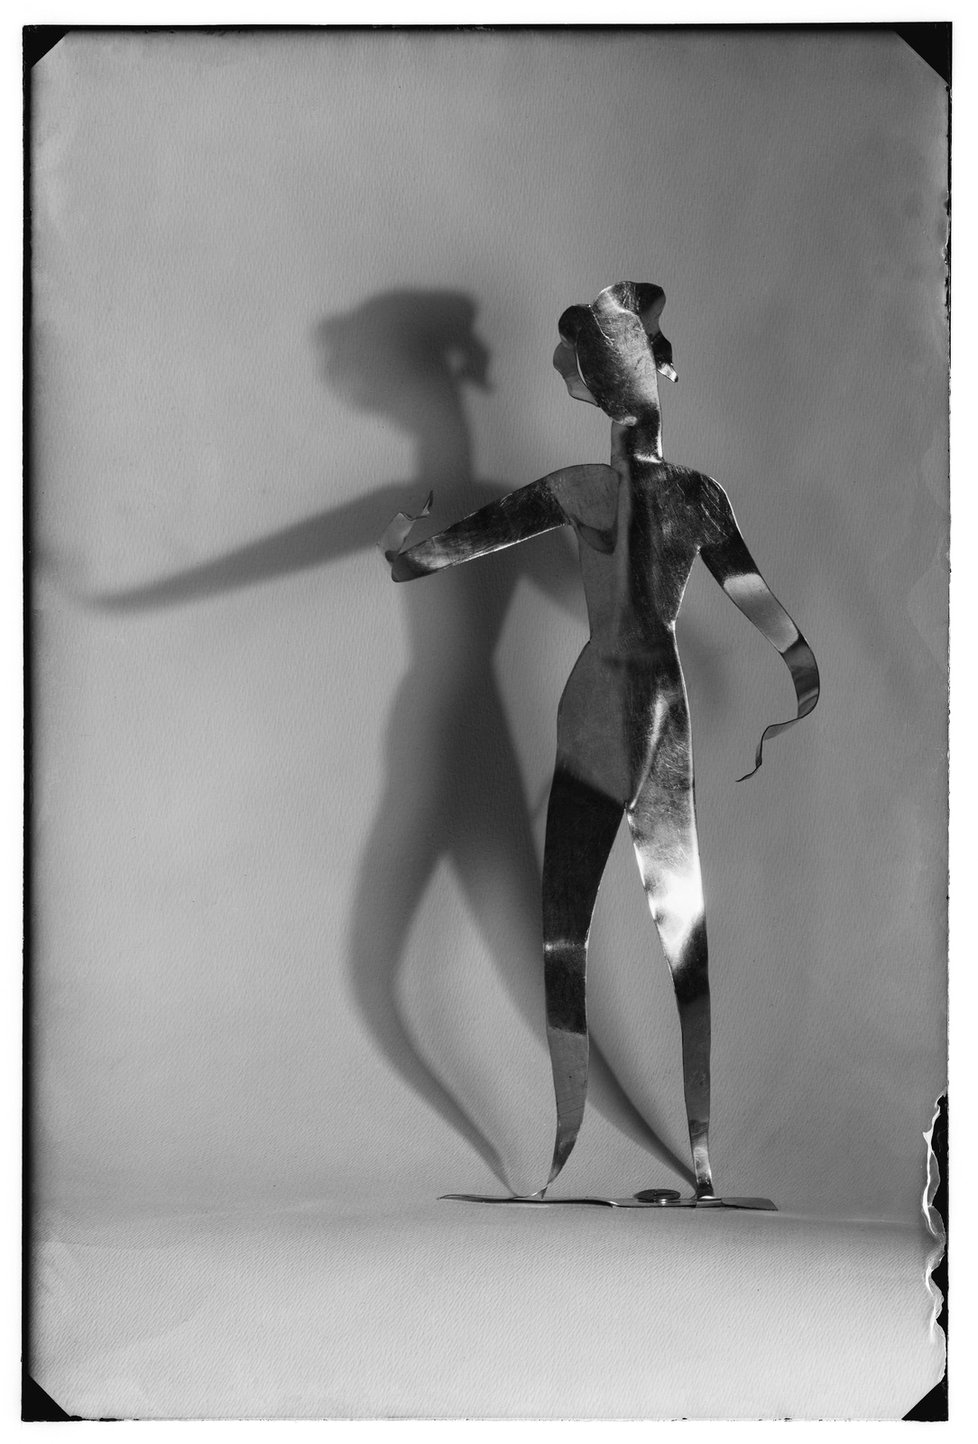 Josef Sudek, [František Tröster–žáci, Reklamní kovová figura, asi 1935], 1935, negativ na skleněné podložce, Ústav dějin umění AV ČR